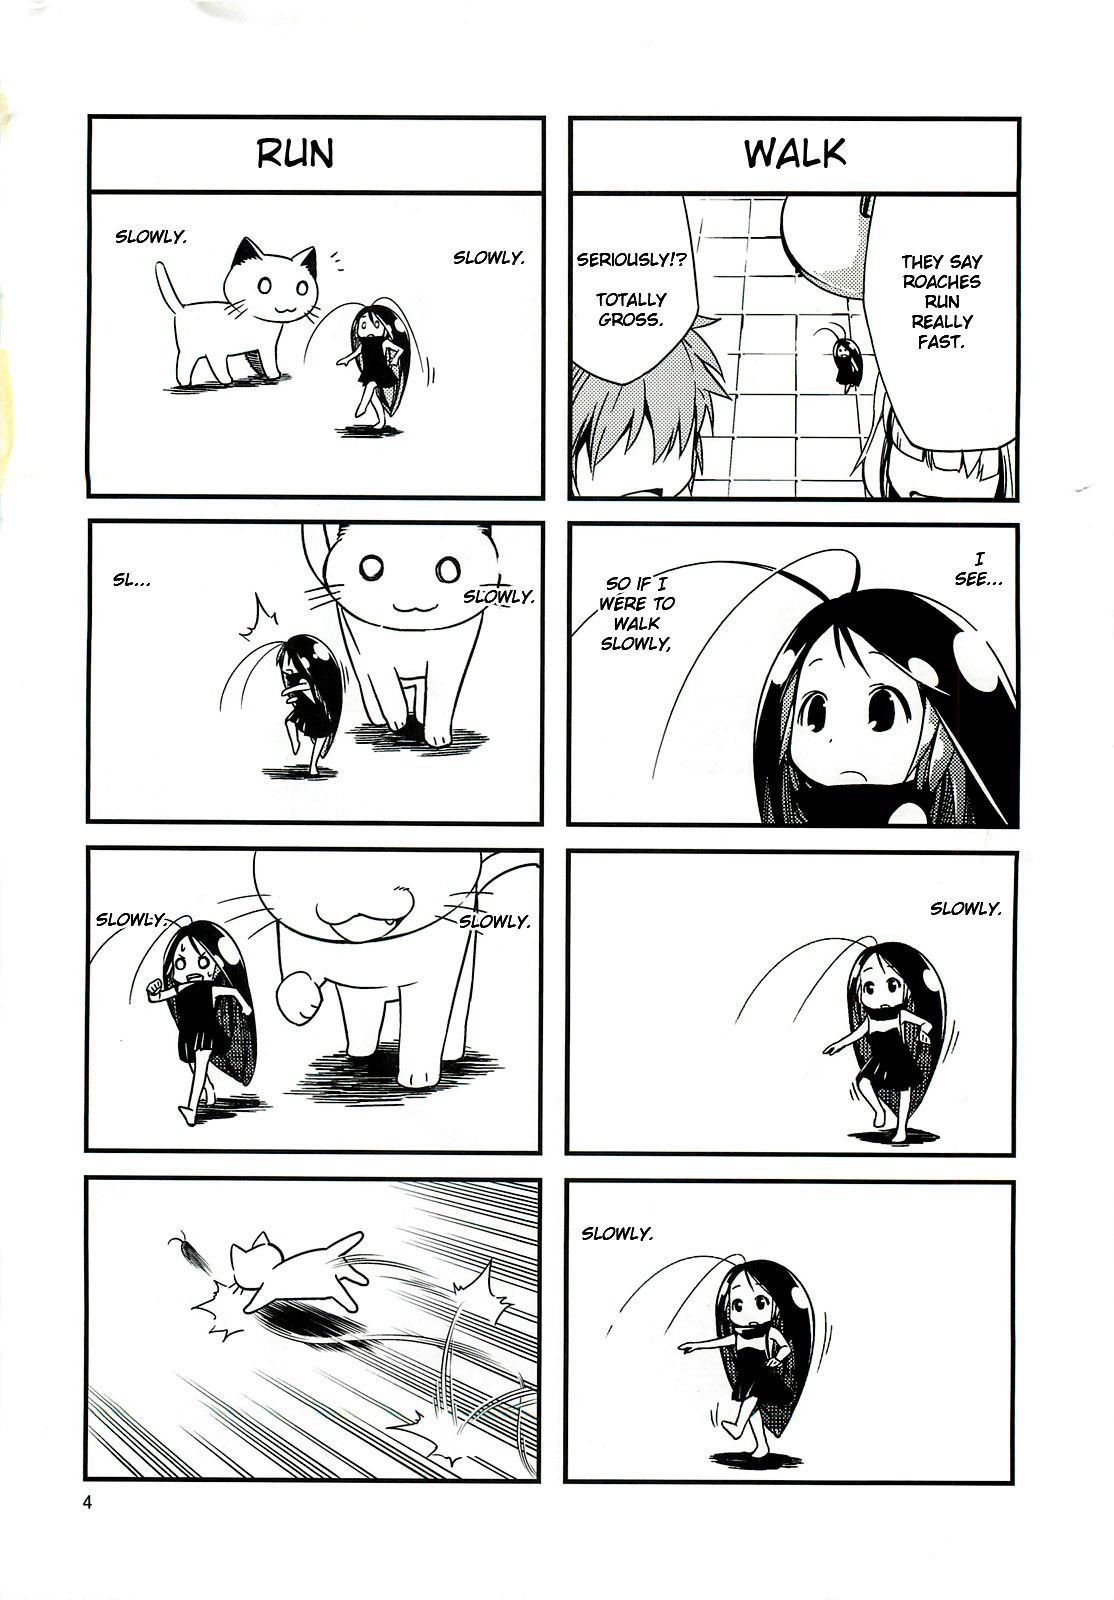 Manga is Gokicha!! - meme